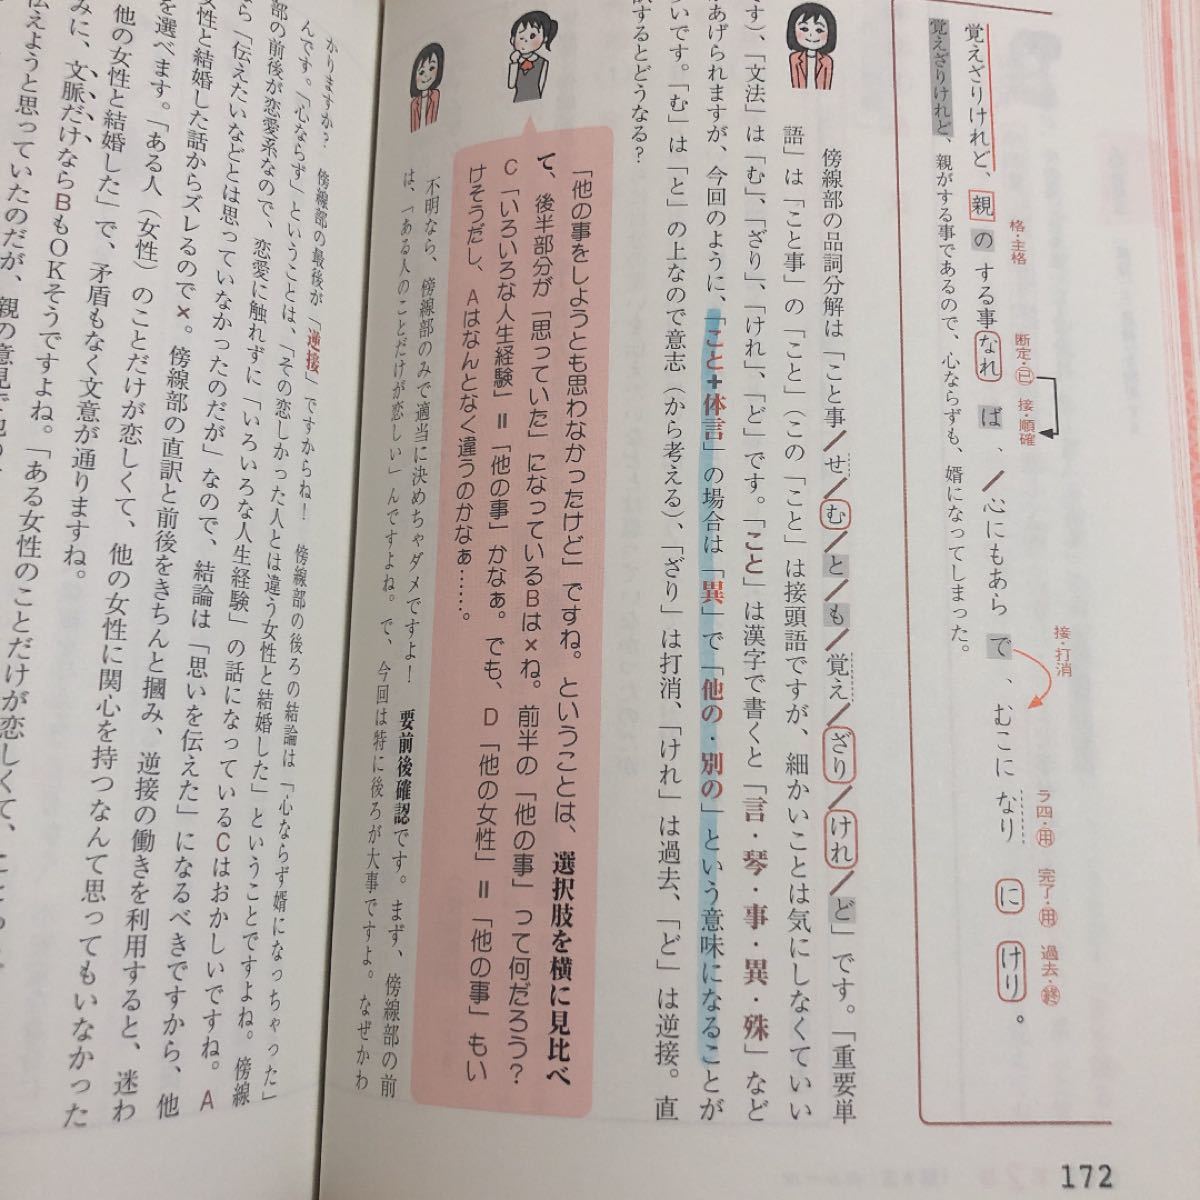 激安格安割引情報満載 岡本梨奈の1冊読むだけで漢文の読み方解き方が